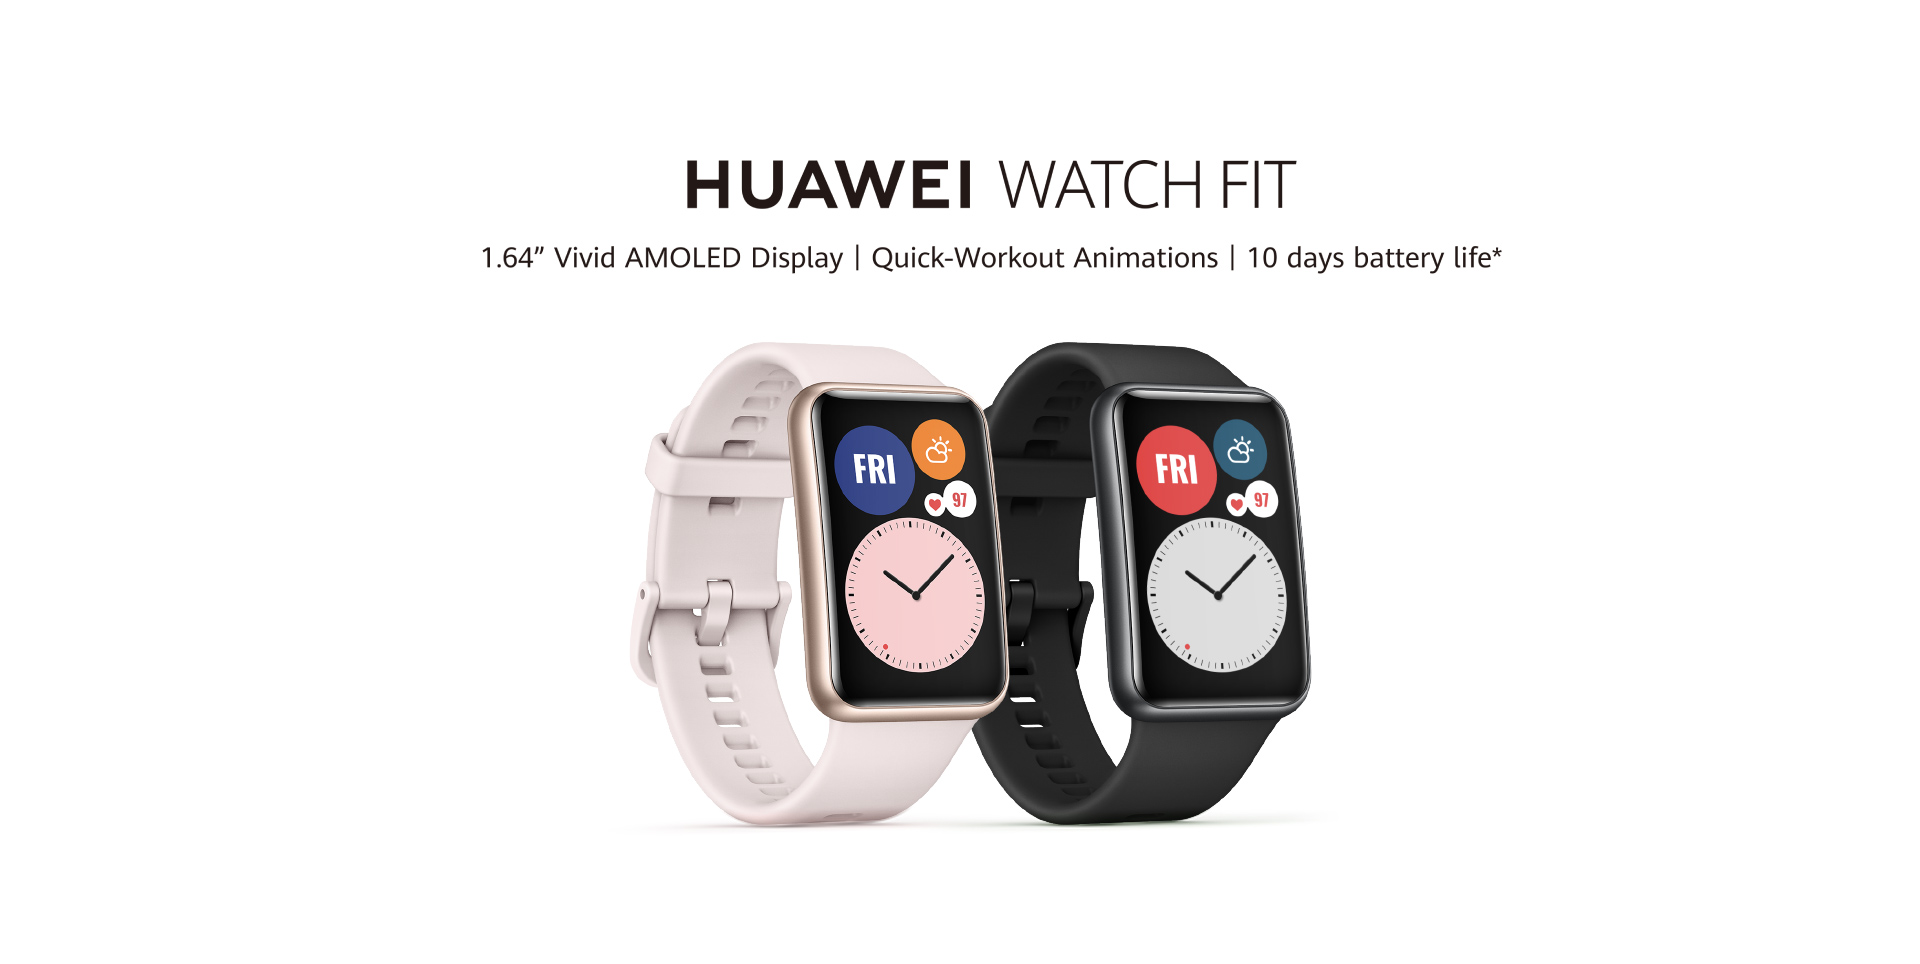 Ватсап на смарт часах хуавей. Хуавей вотч фит Нью. Huawei watch Fit 2 коробка. Часы Huawei watch Fit 2. Huawei watch Fit New.